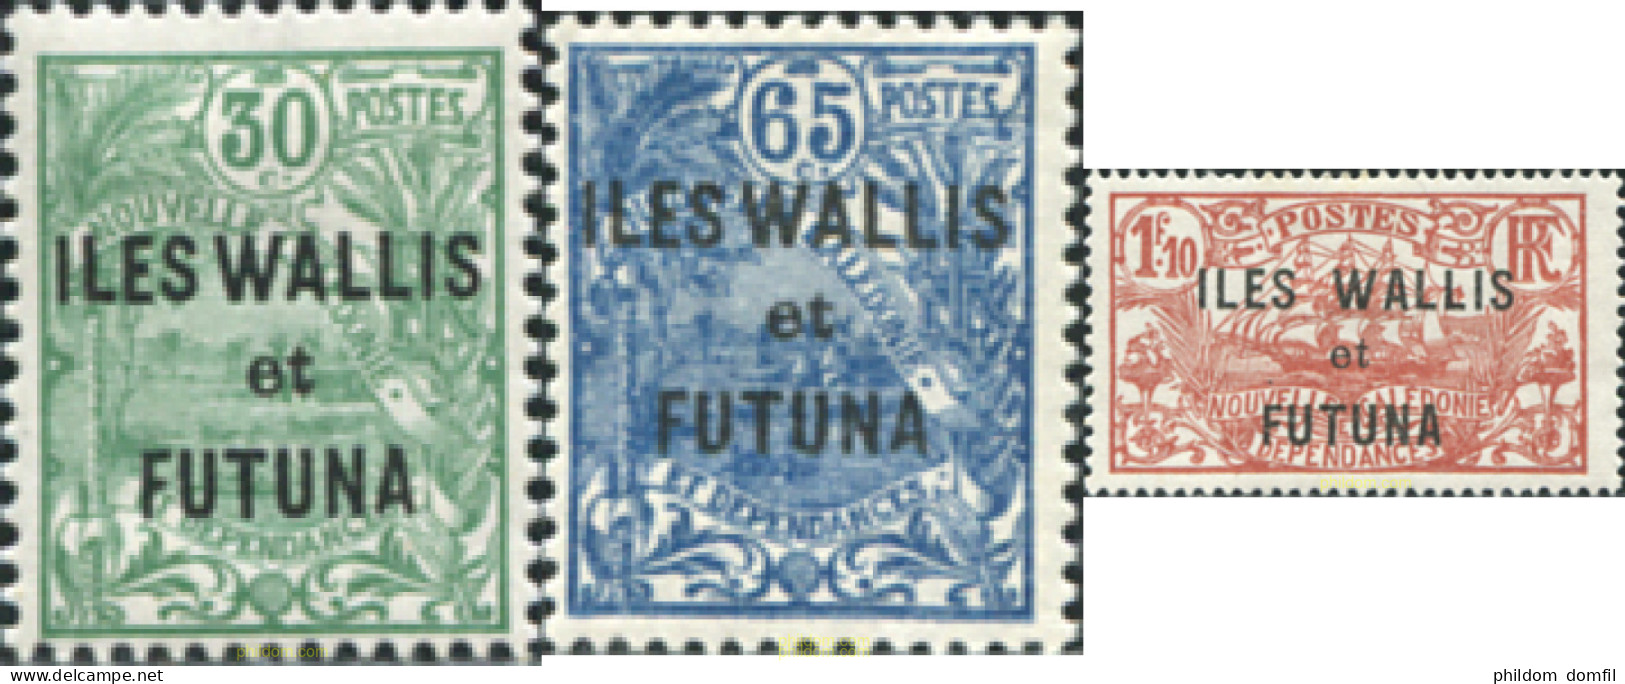 608335 HINGED WALLIS Y FUTUNA 1927 TIPOS DE NUEVA CALEDONIA SOBRE IMPRESOS - Neufs